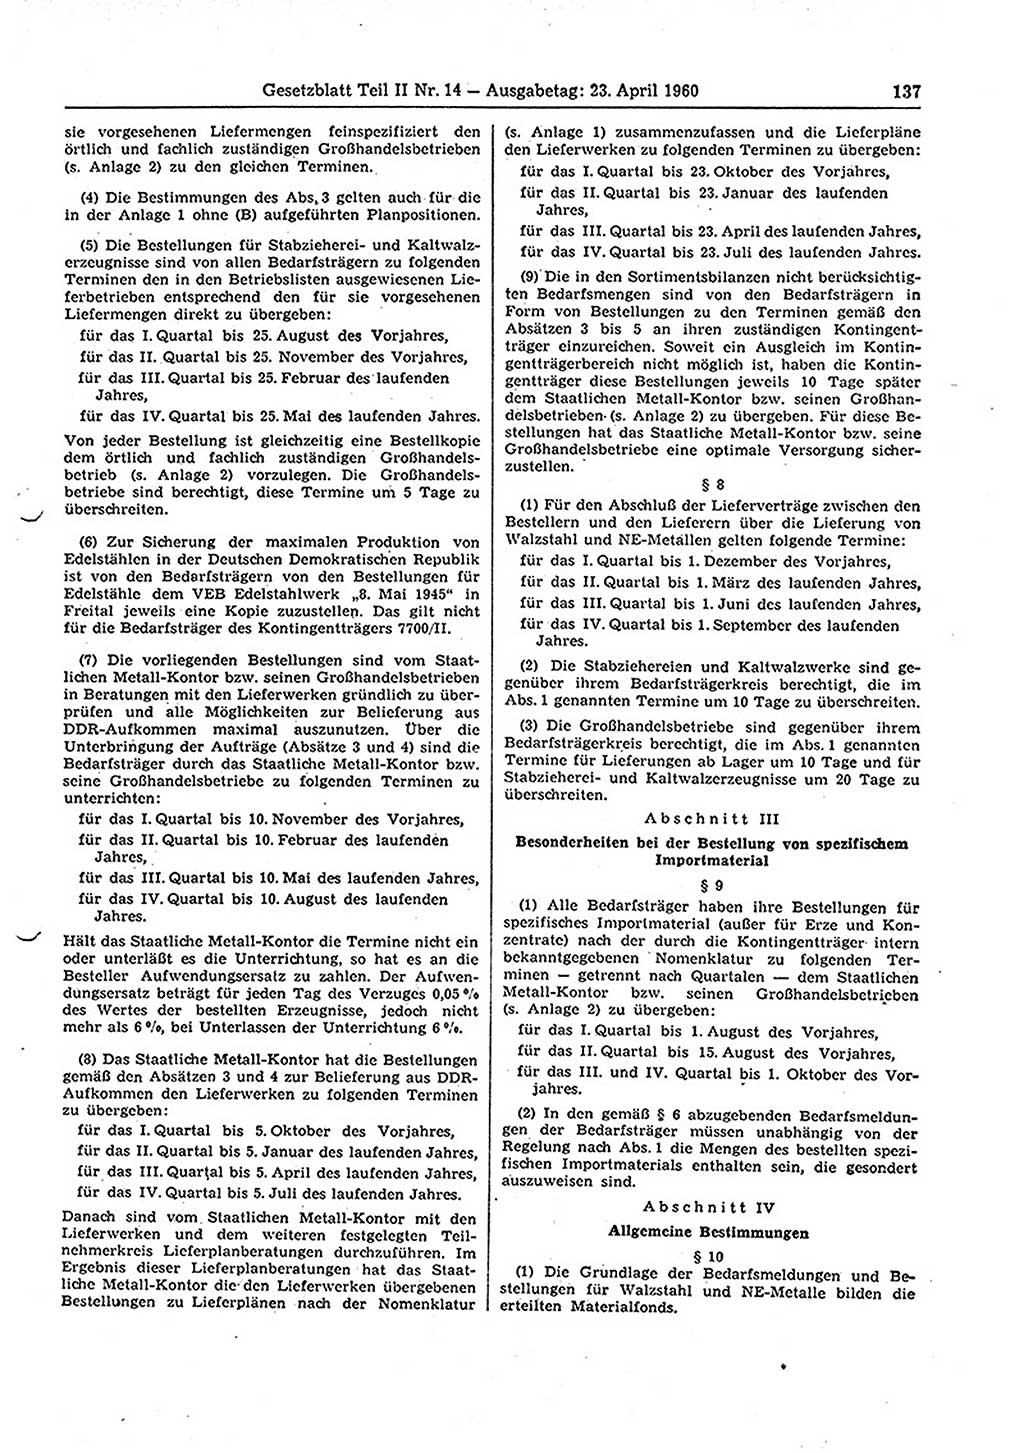 Gesetzblatt (GBl.) der Deutschen Demokratischen Republik (DDR) Teil ⅠⅠ 1960, Seite 137 (GBl. DDR ⅠⅠ 1960, S. 137)